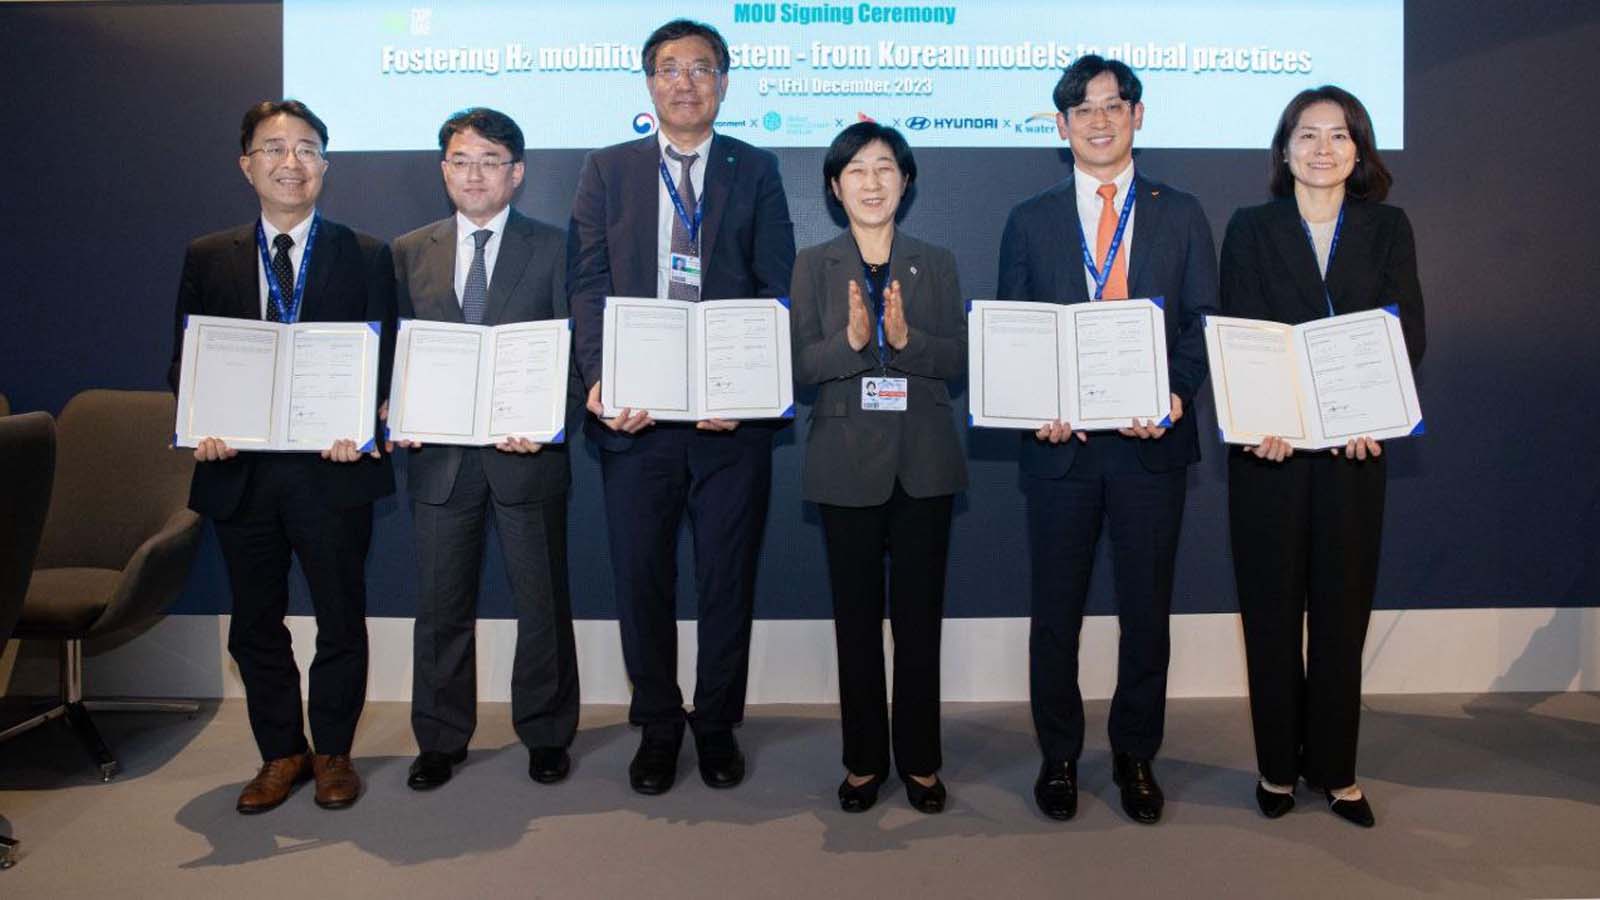 Un approccio innovativo per una mobilità ecologica da Hyundai e partners